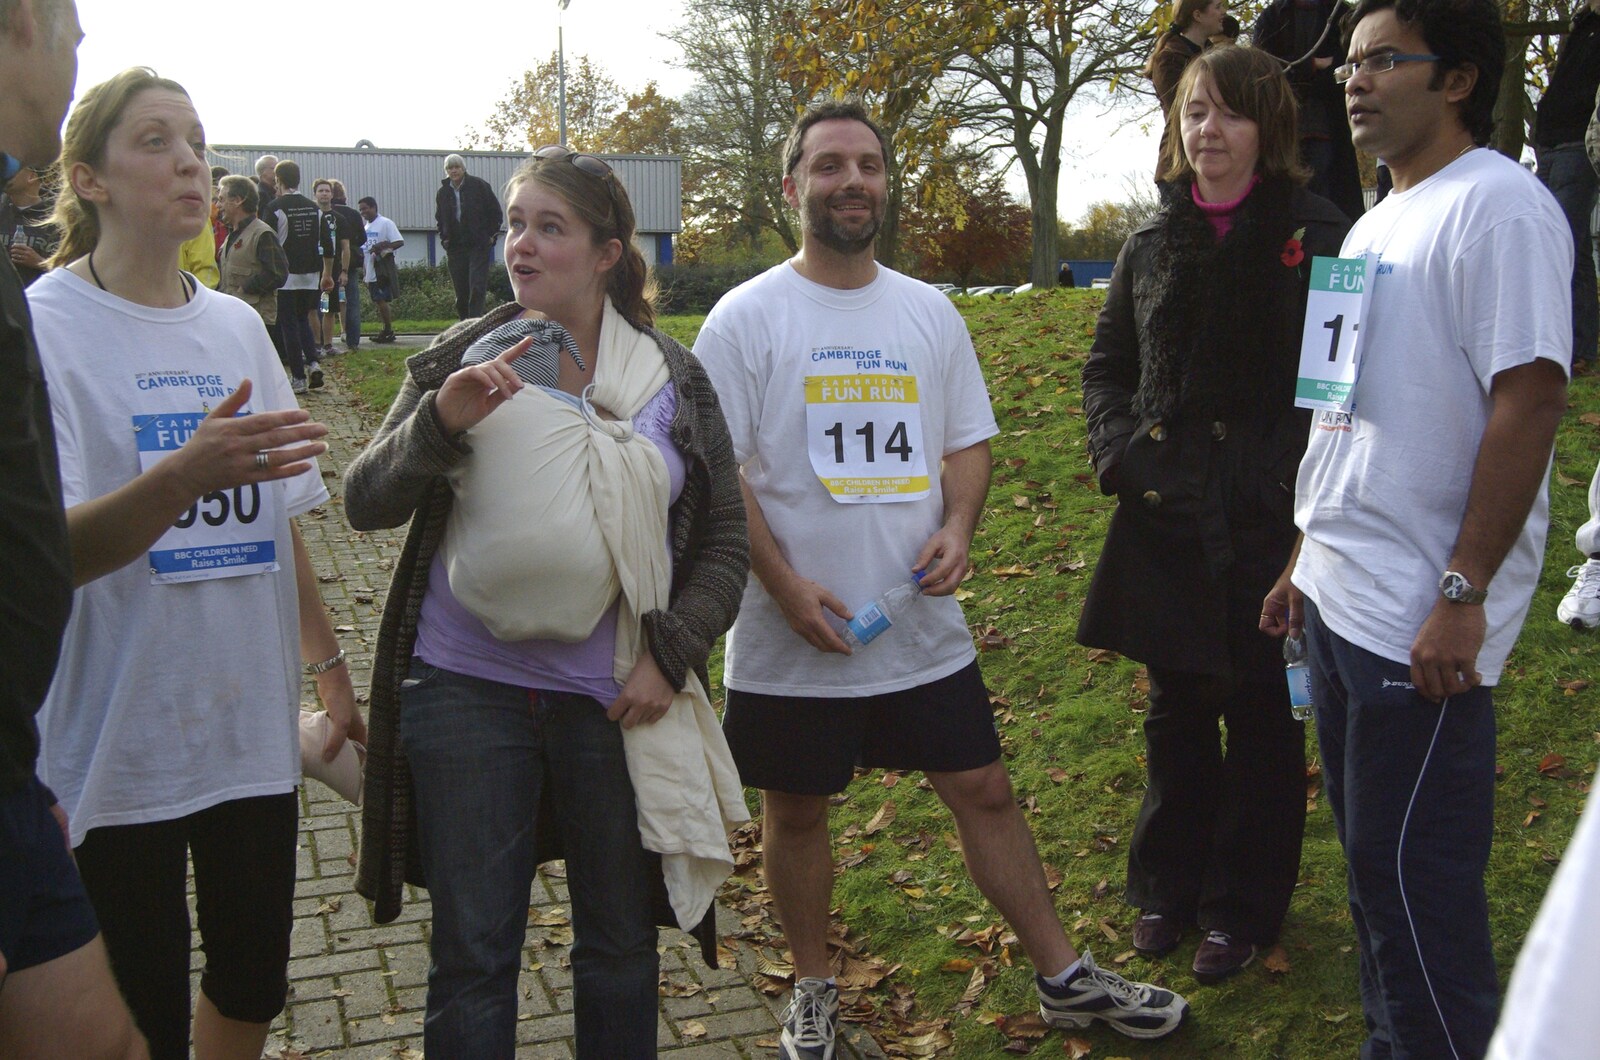 The Cambridge Fun Run, Milton Road, Cambridge - 14th November 2008: Isobel comes over to meet the runners